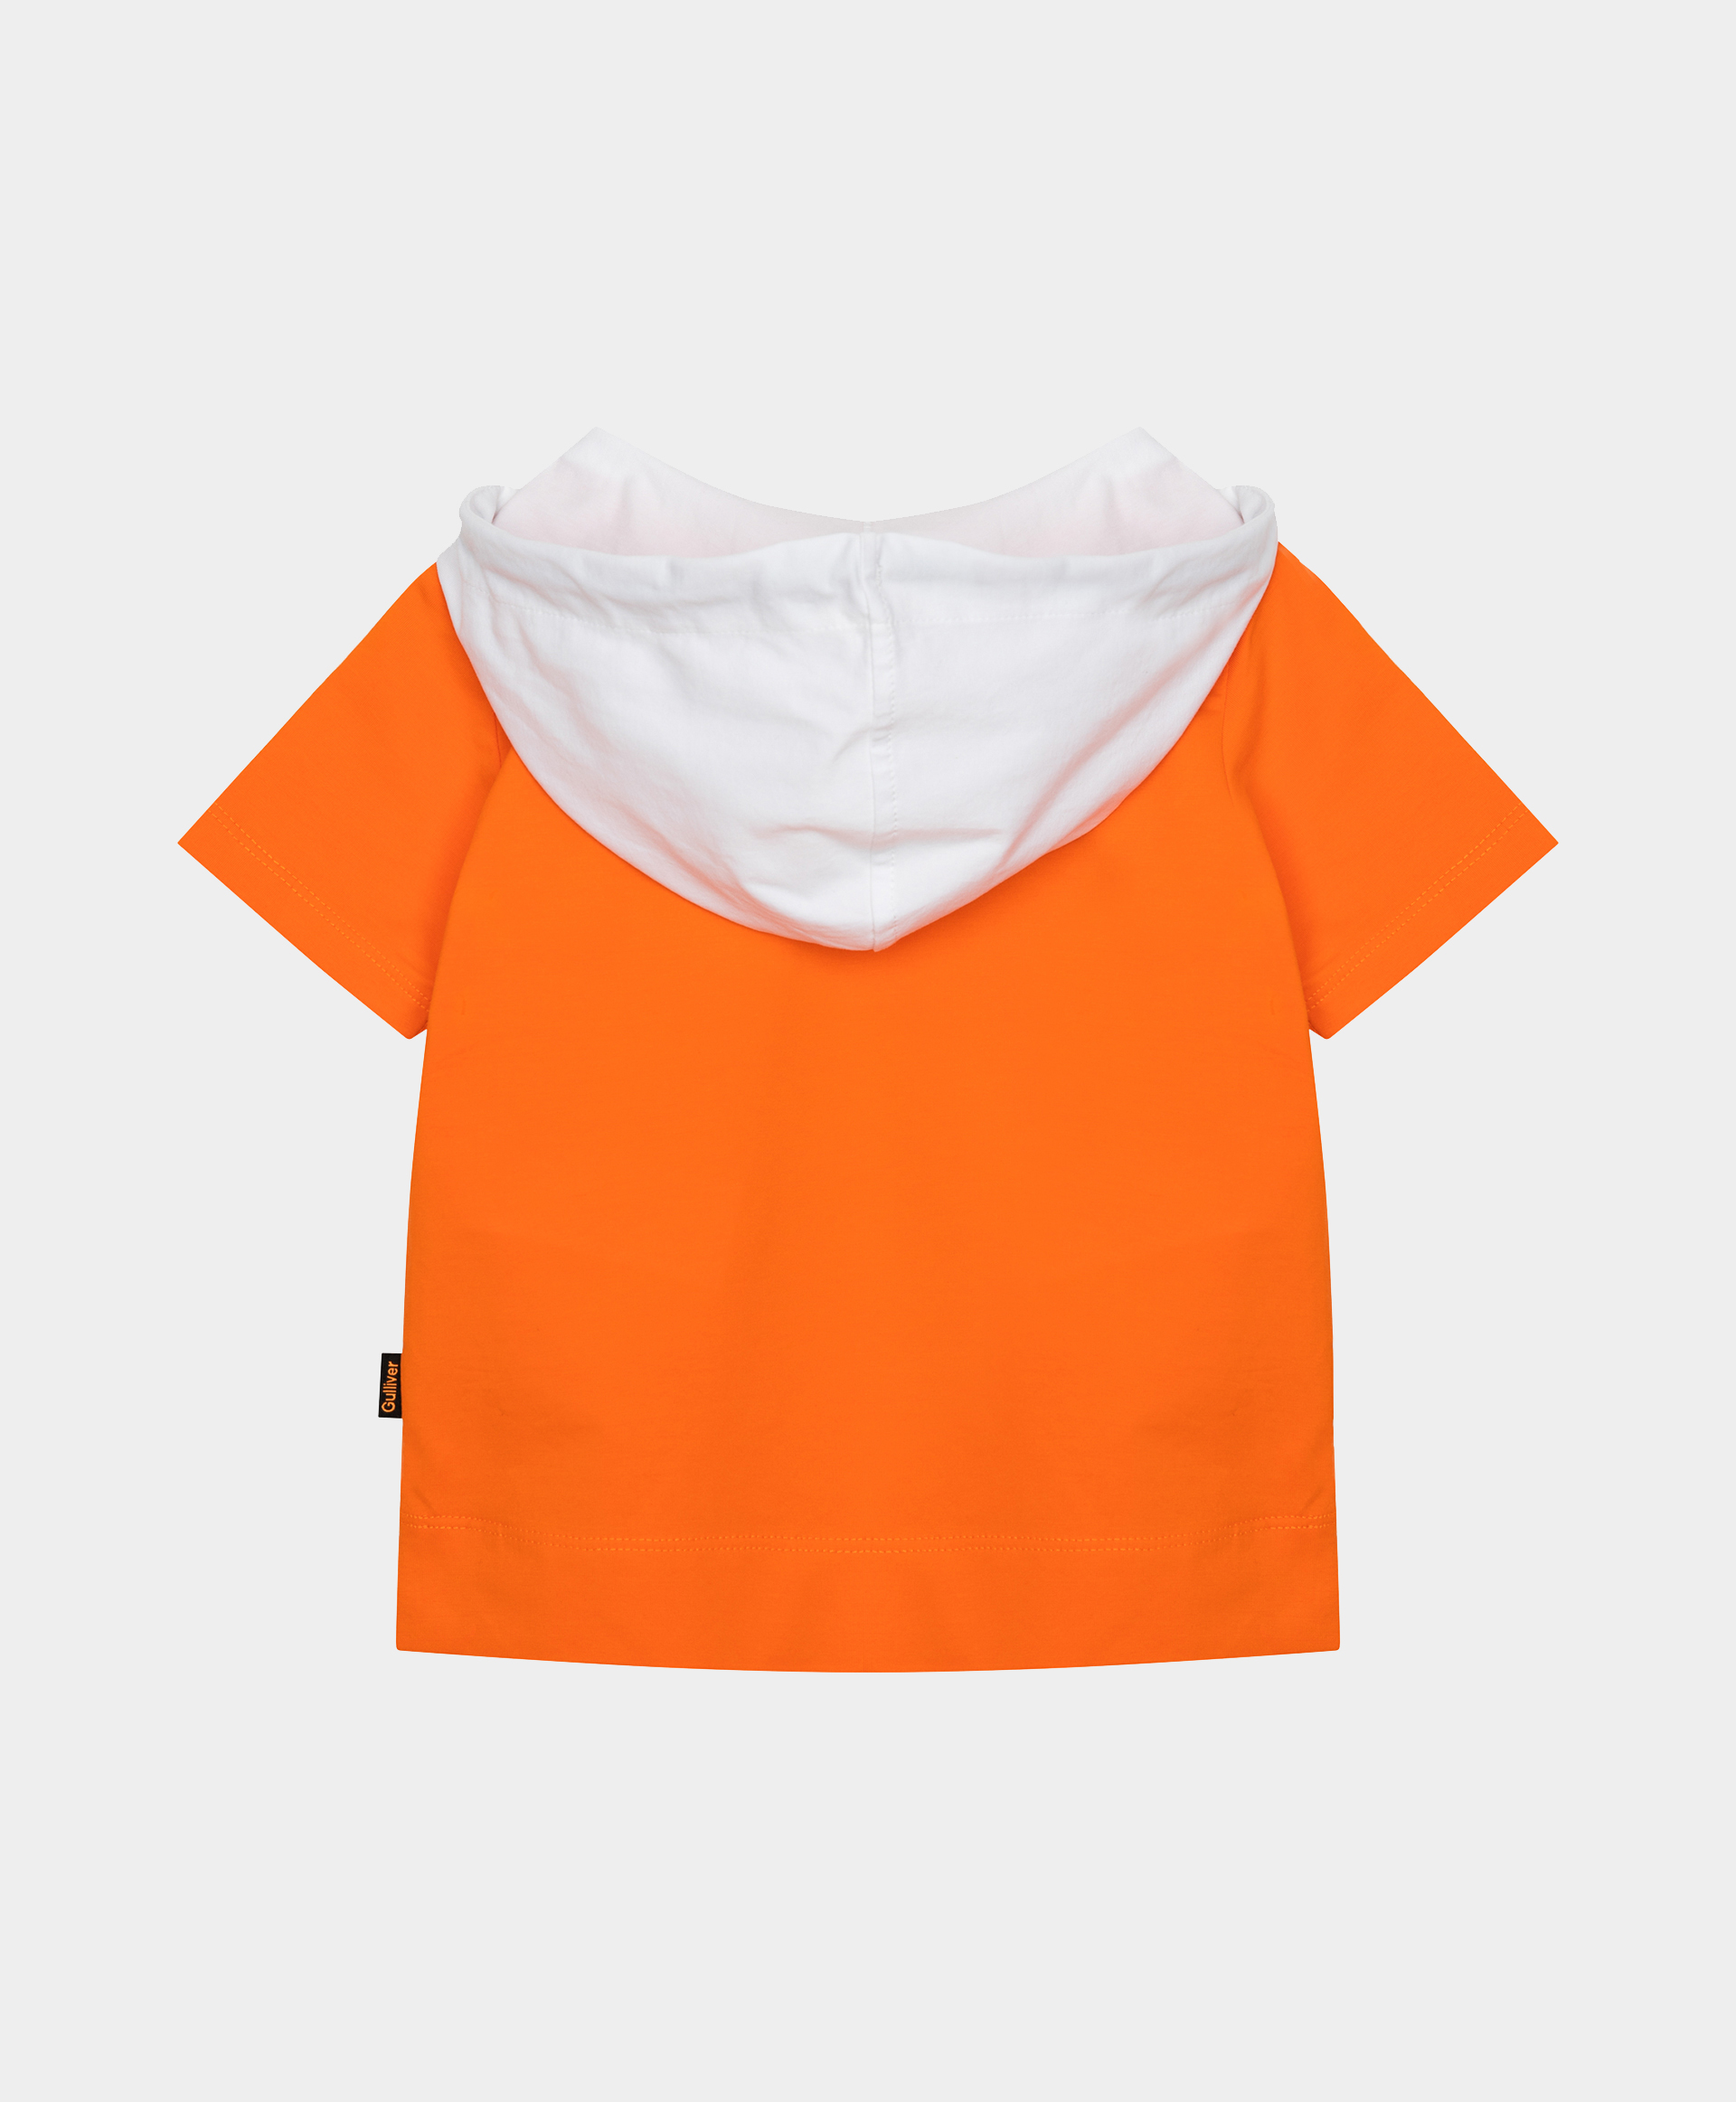 Футболка с капюшоном оранжевая Gulliver 12134BBC1206, размер 74, цвет оранжевый - фото 3